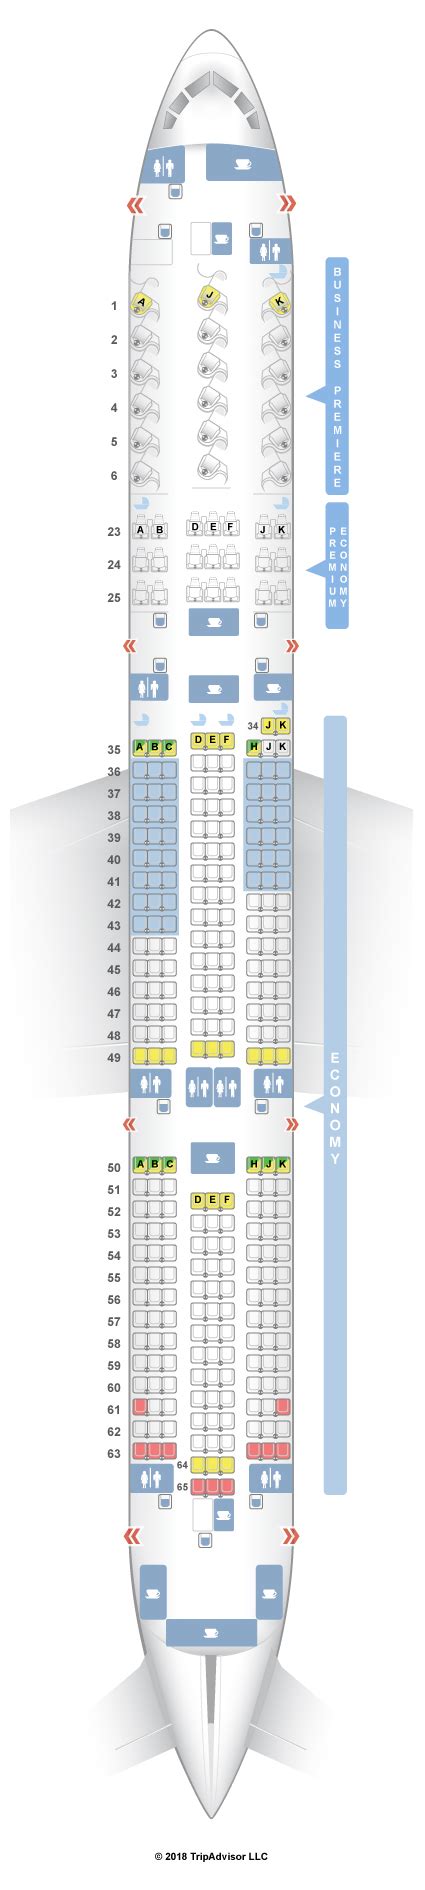 Boeing 787 9 Seat Map ~ Afp Cv